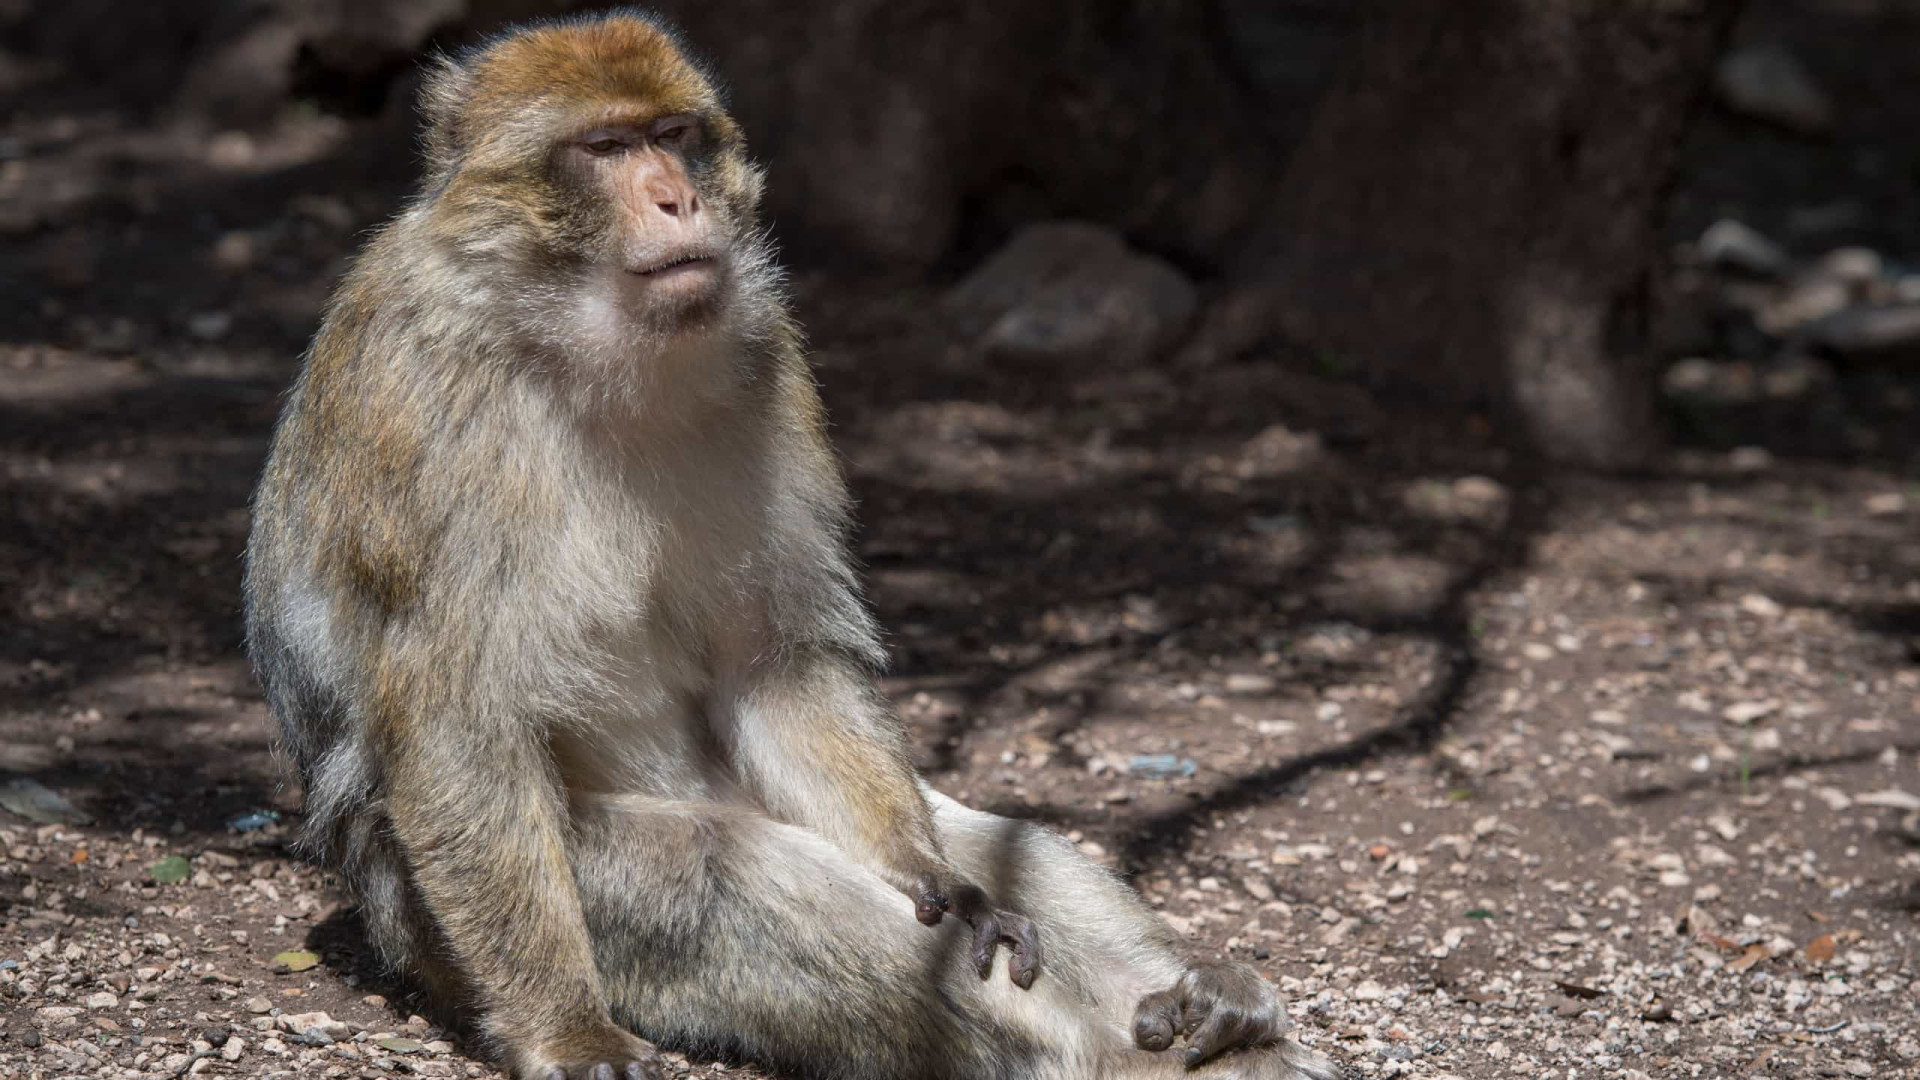 Zoo escocês lamenta após visitantes assistirem leões comendo um macaco